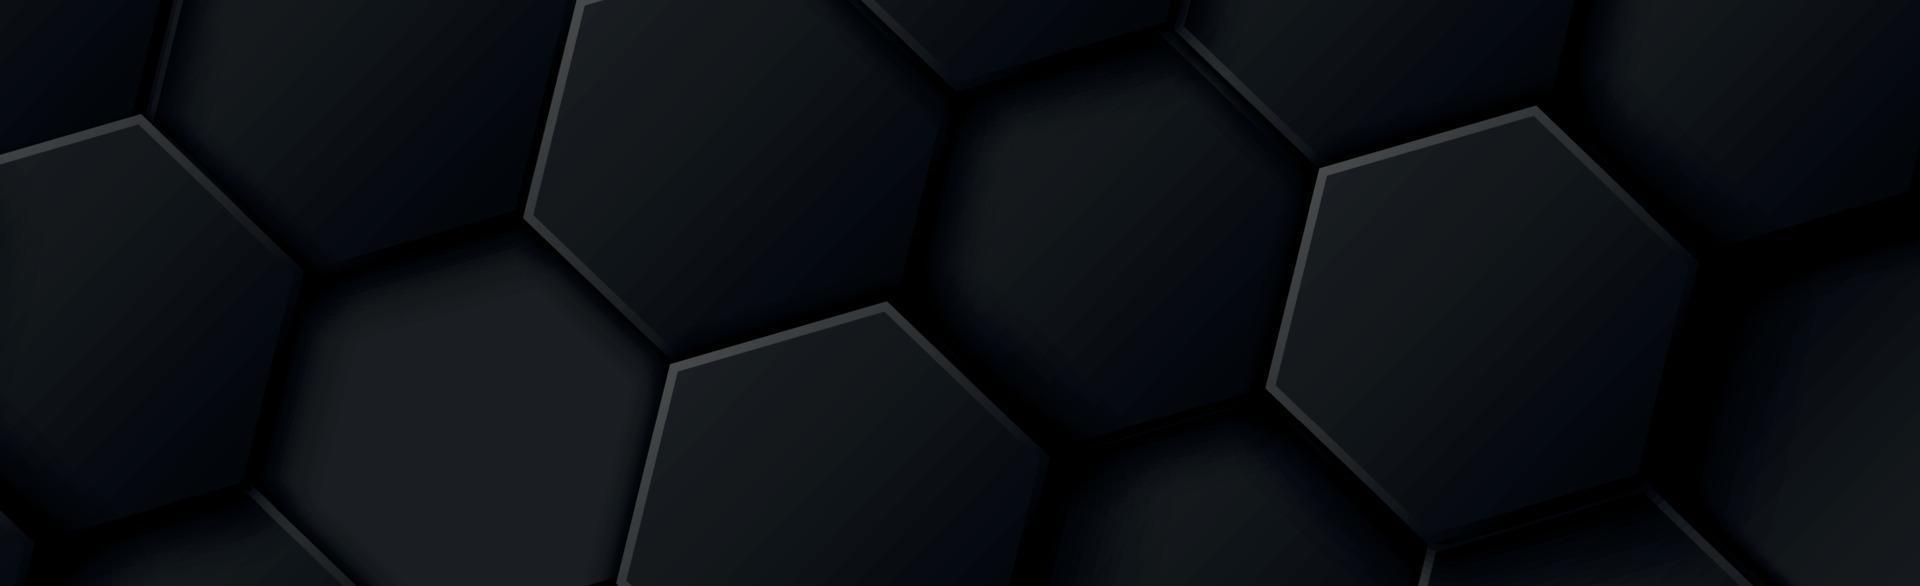 hexagones abstraits noirs sur fond noir et gris vecteur